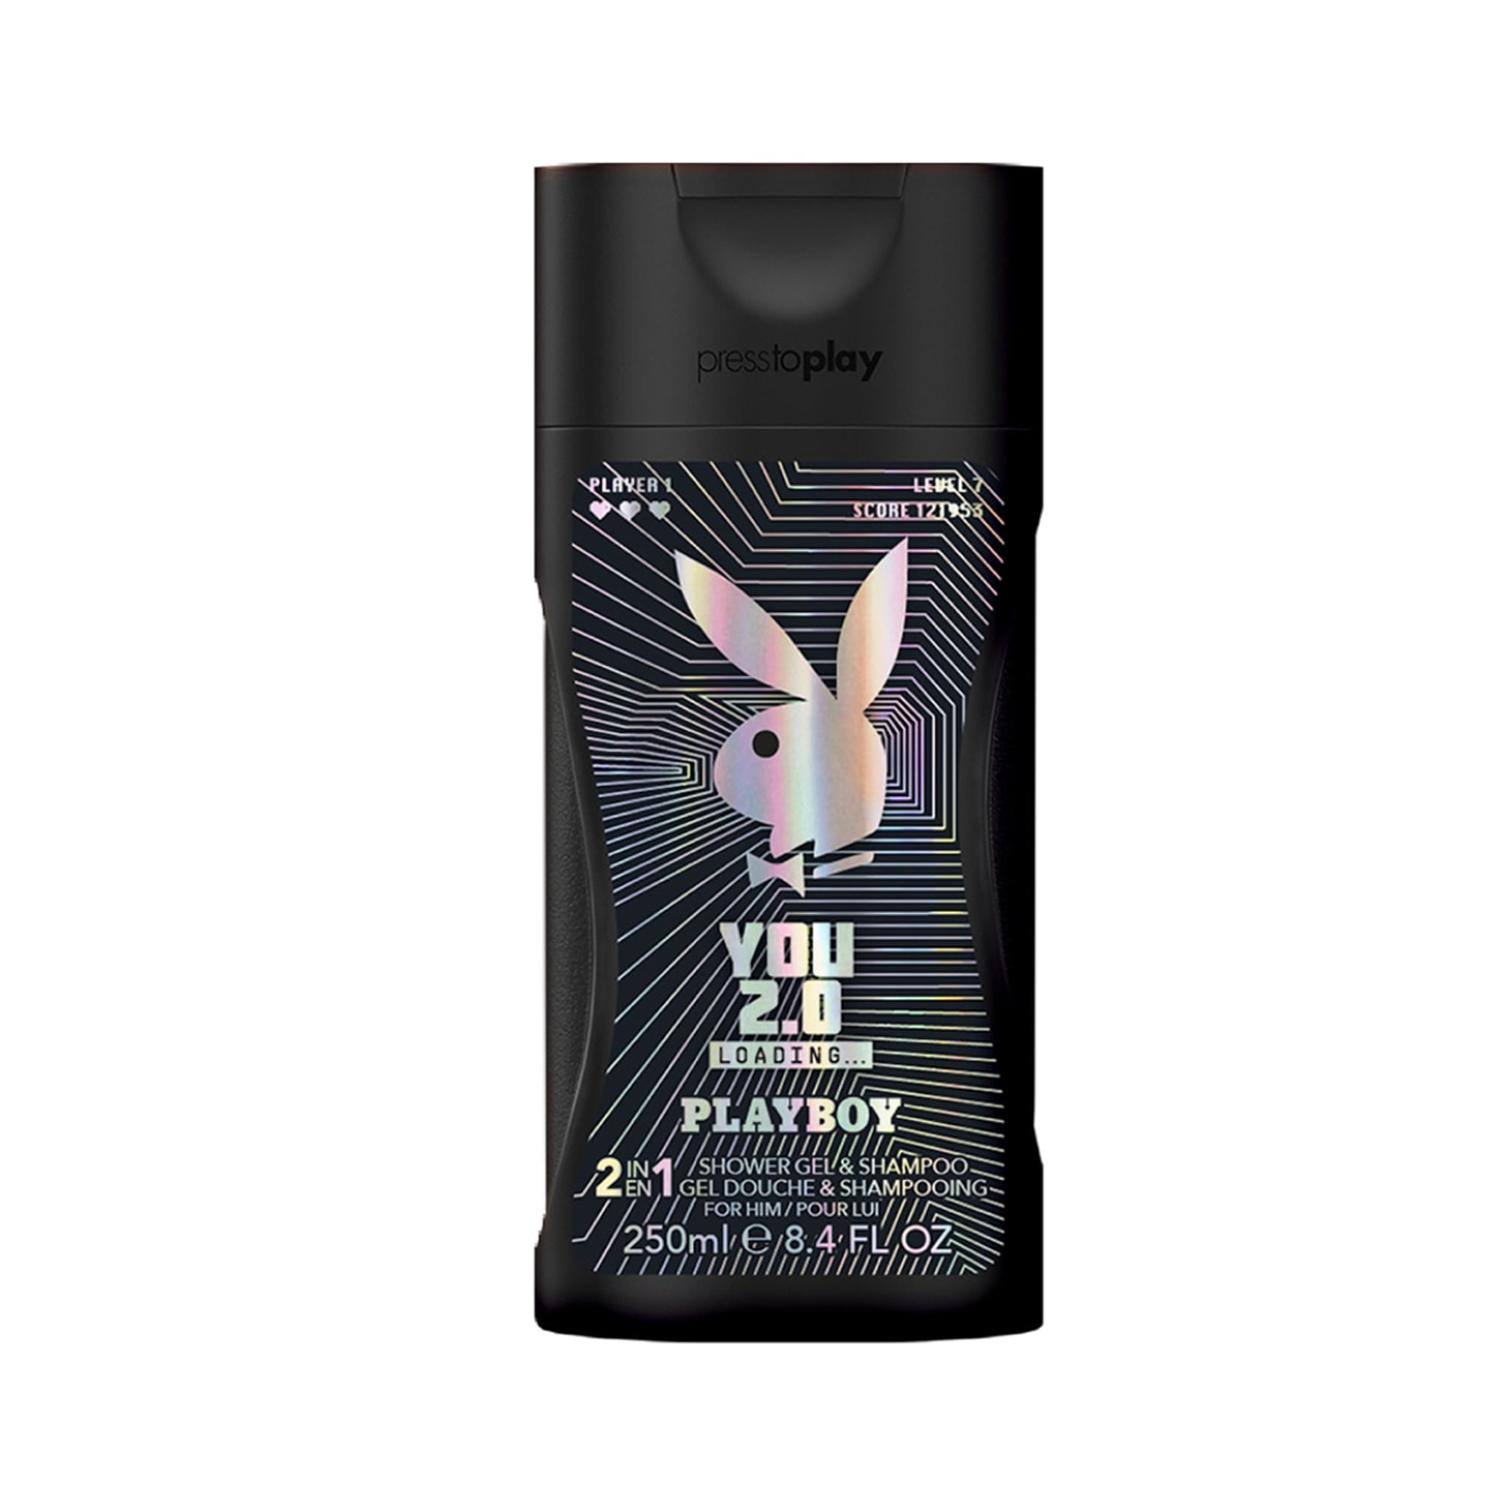 Playboy | Playboy You 2.0 Loading Shower Gel (250ml)